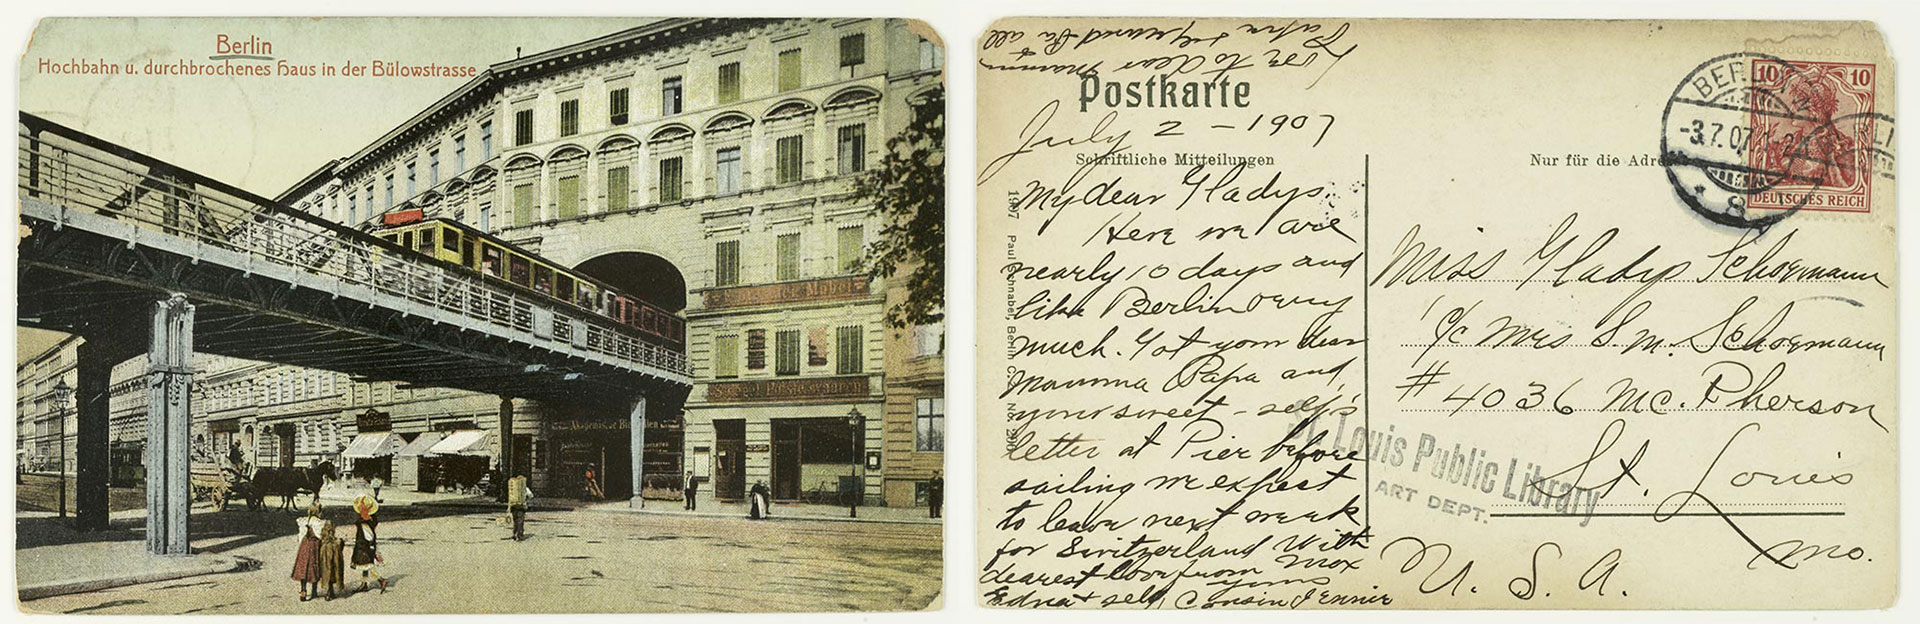 Berline, Hochbahn u. durchbrochenes haus in der Bülowstrasse ca. 1900